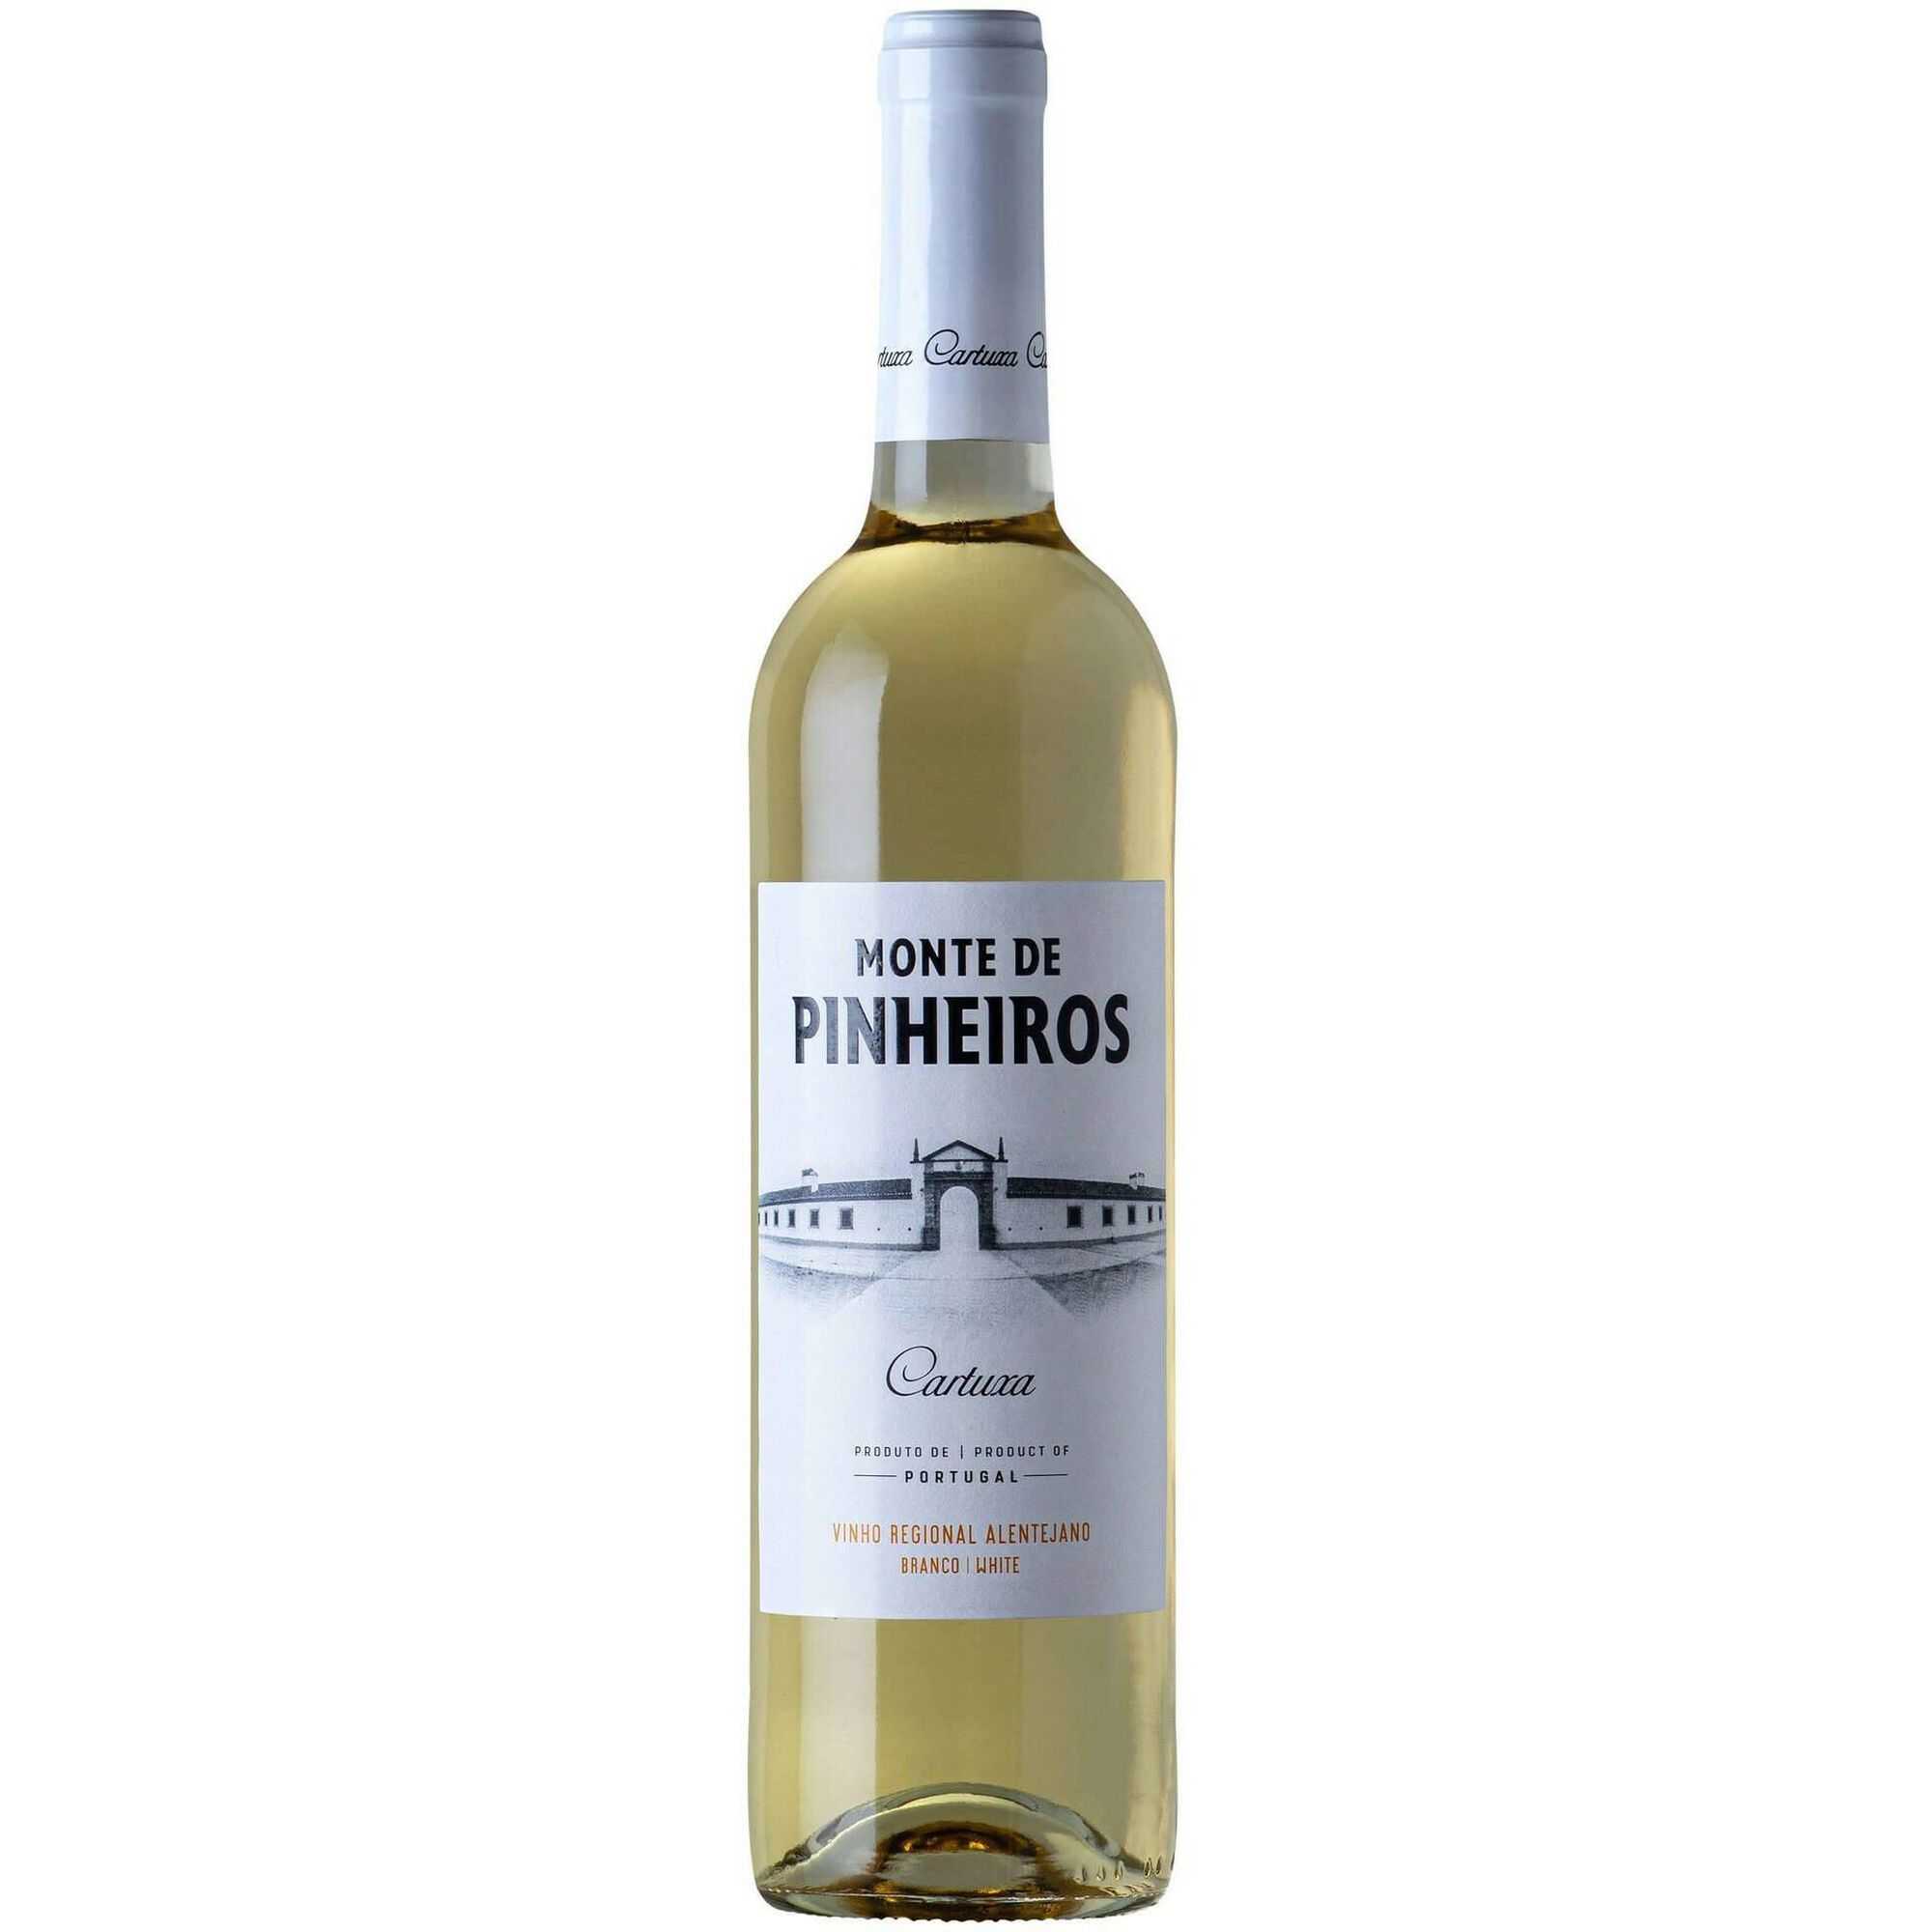 Monte de Pinheiros Regional Alentejano Vinho Branco